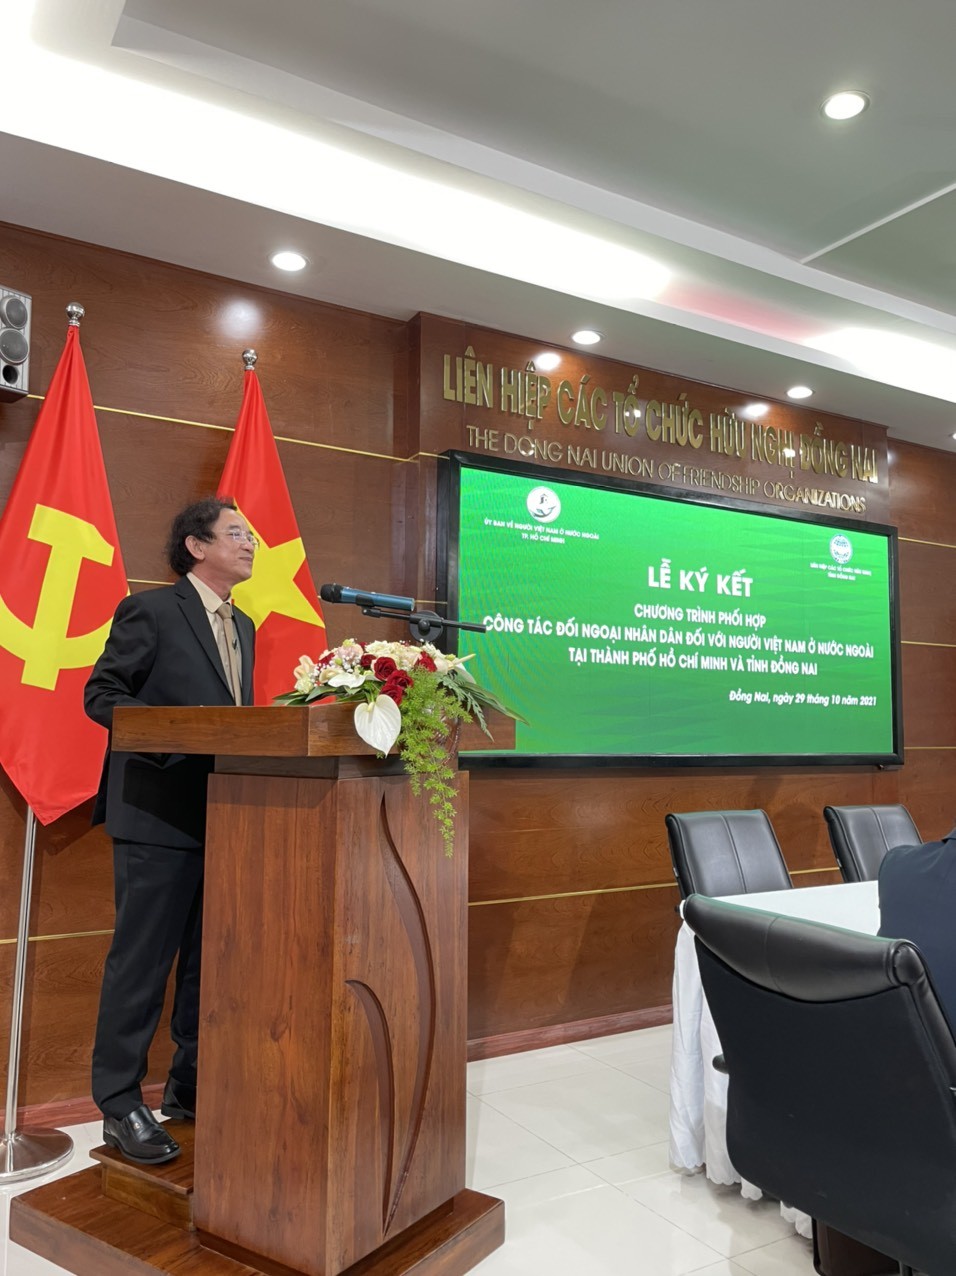 DUFO và Ủy ban về NVNONN TP Hồ Chí Minh ký kết chương trình về công tác đối ngoại nhân dân